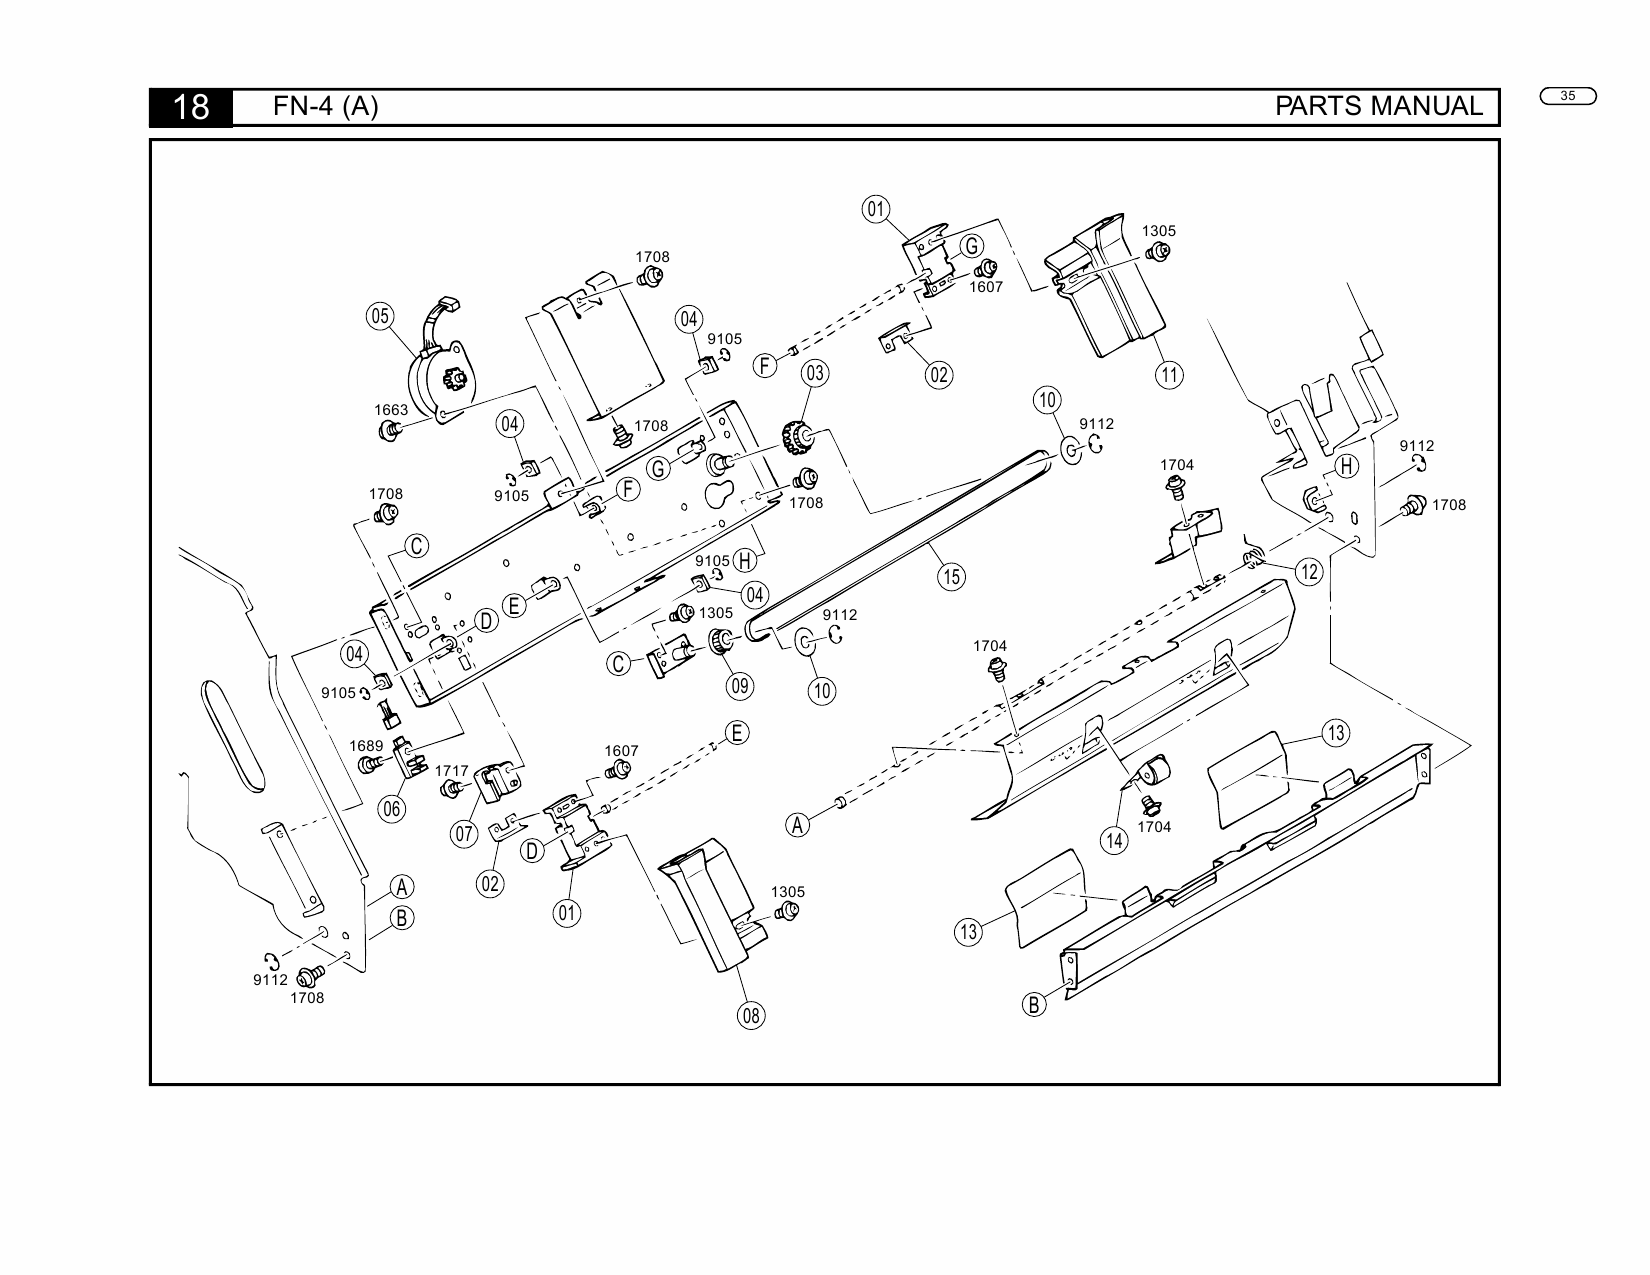 Konica-Minolta Options FN-4 104 Parts Manual-5